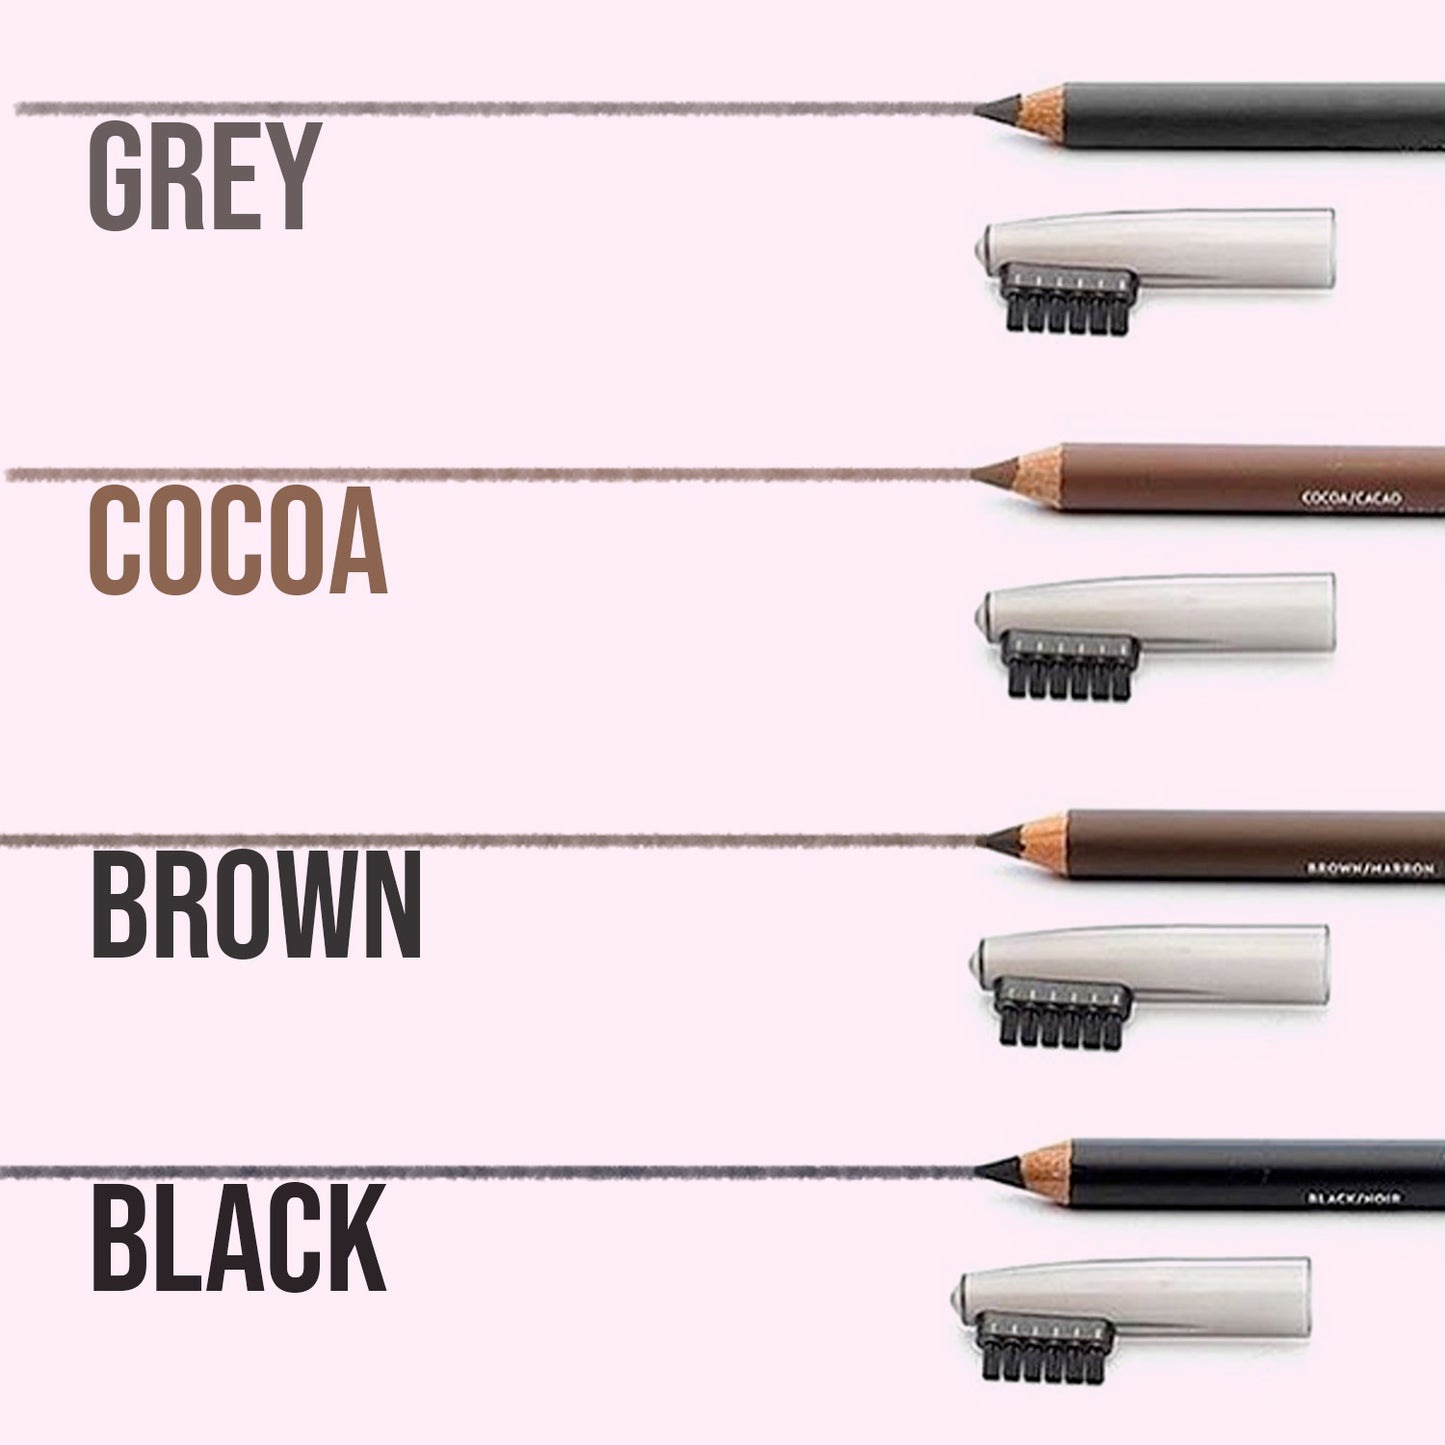 COLOR-ME Eyebrow pencil